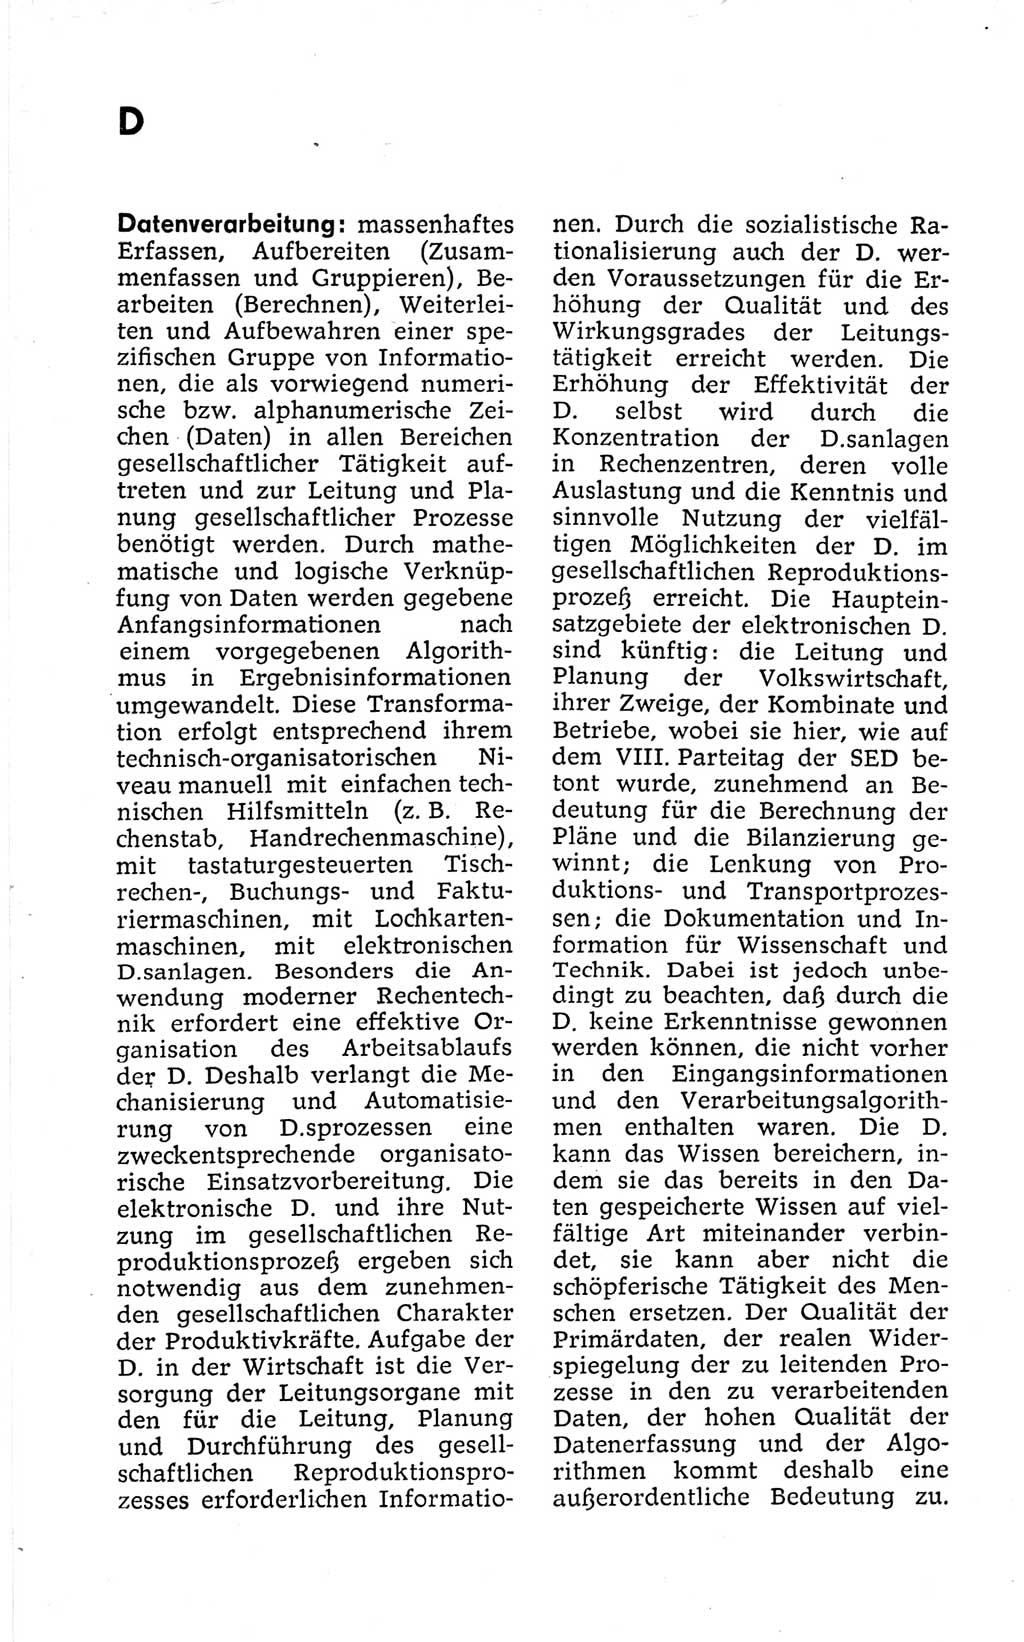 Kleines politisches Wörterbuch [Deutsche Demokratische Republik (DDR)] 1973, Seite 140 (Kl. pol. Wb. DDR 1973, S. 140)